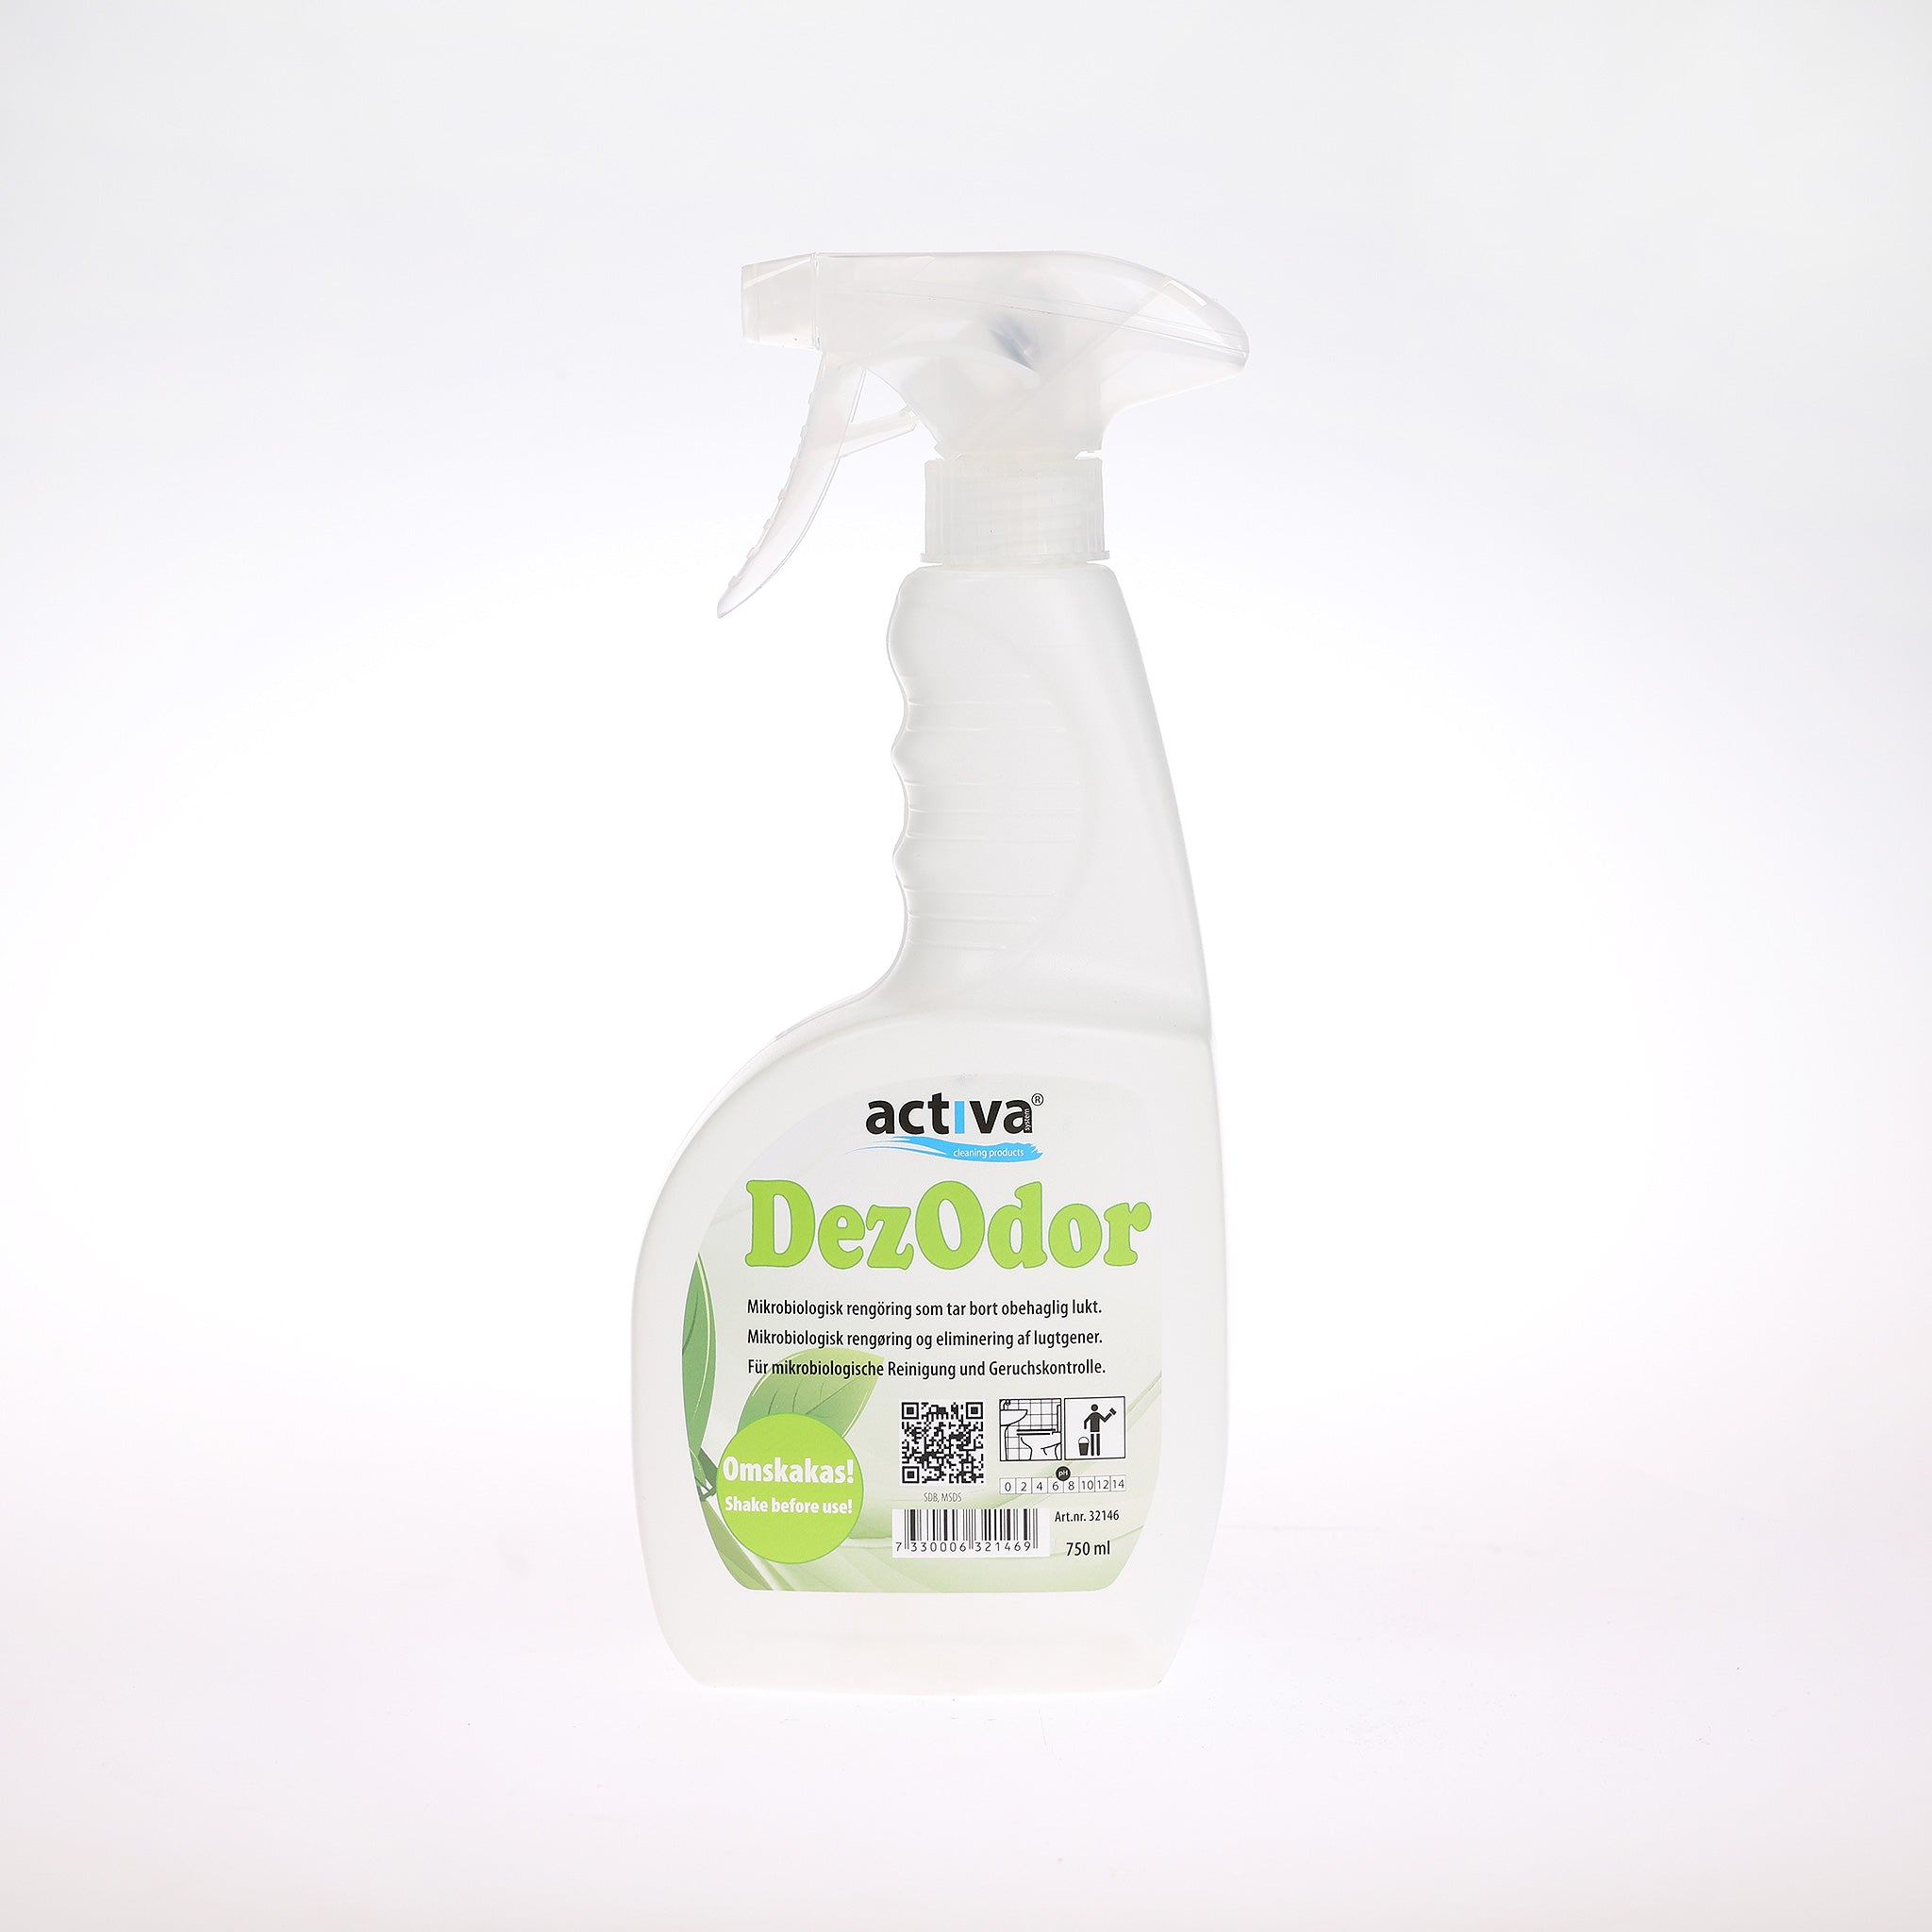 Activa DezOdor er en effektiv røg- og lugtfjerner, der nemt bekæmper og eliminerer grimme lugte som røg, urin, opkast og mere.